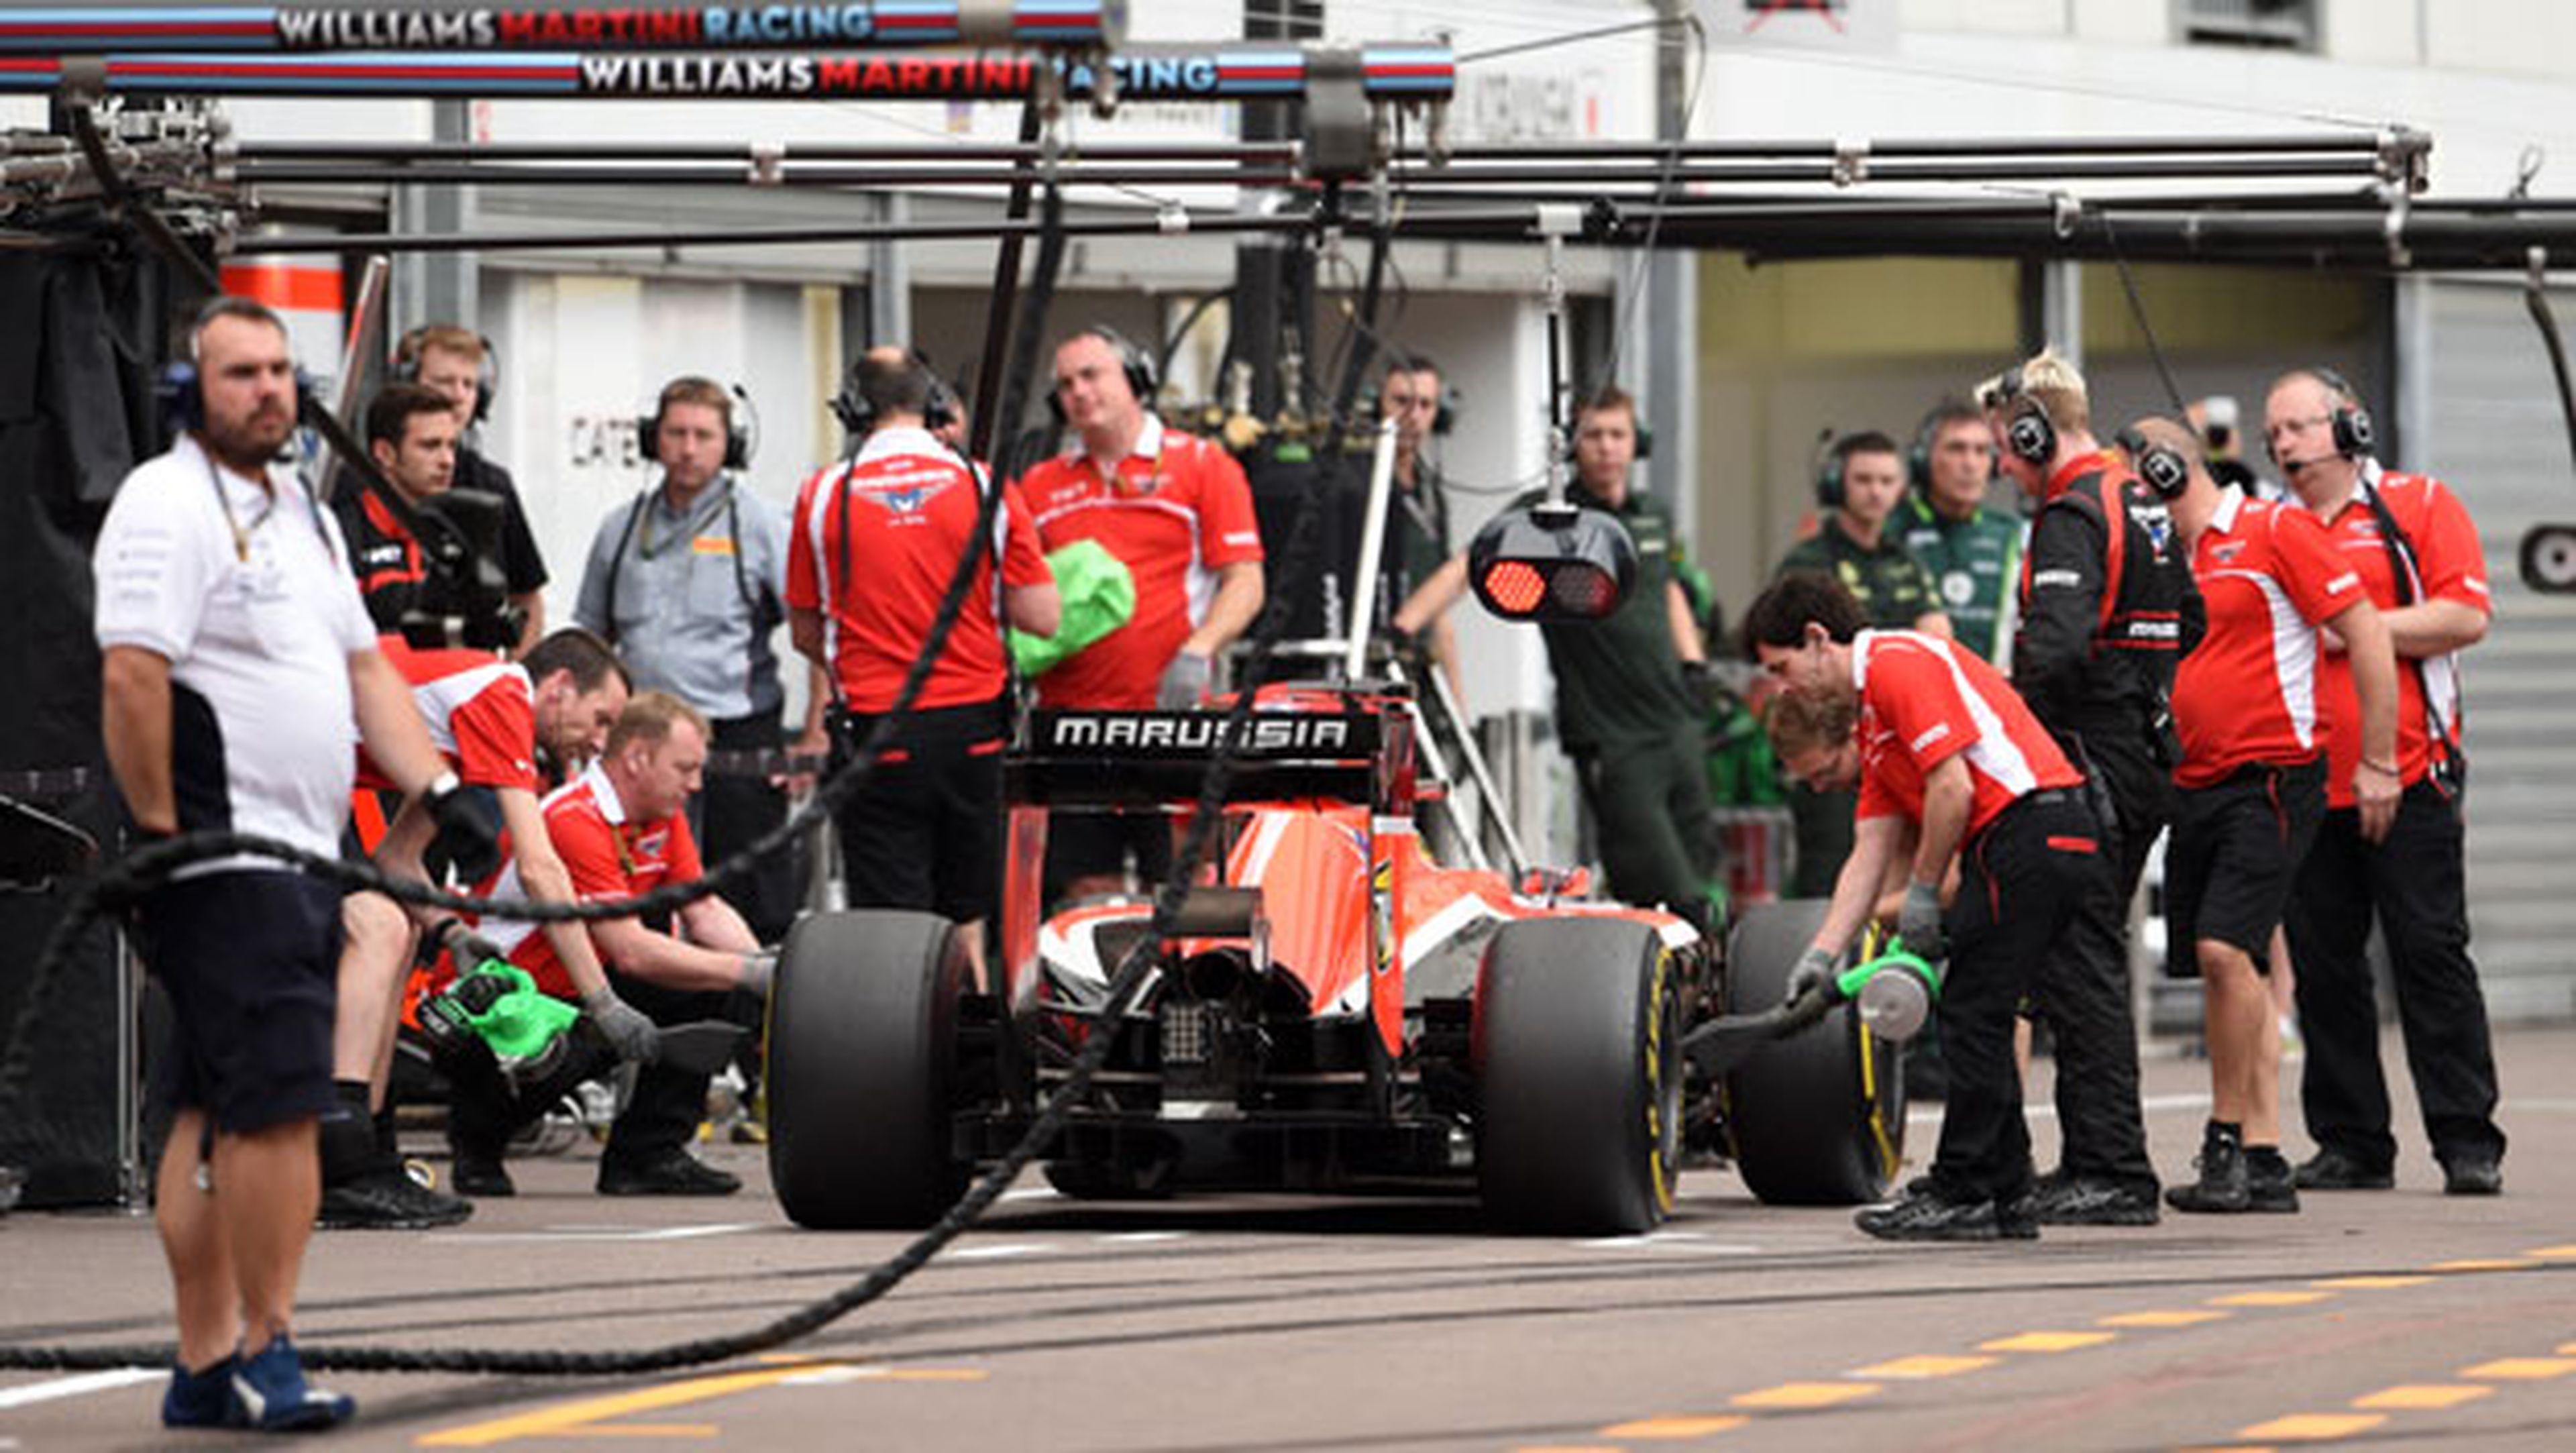 Parada en boxes del equipo Marussia